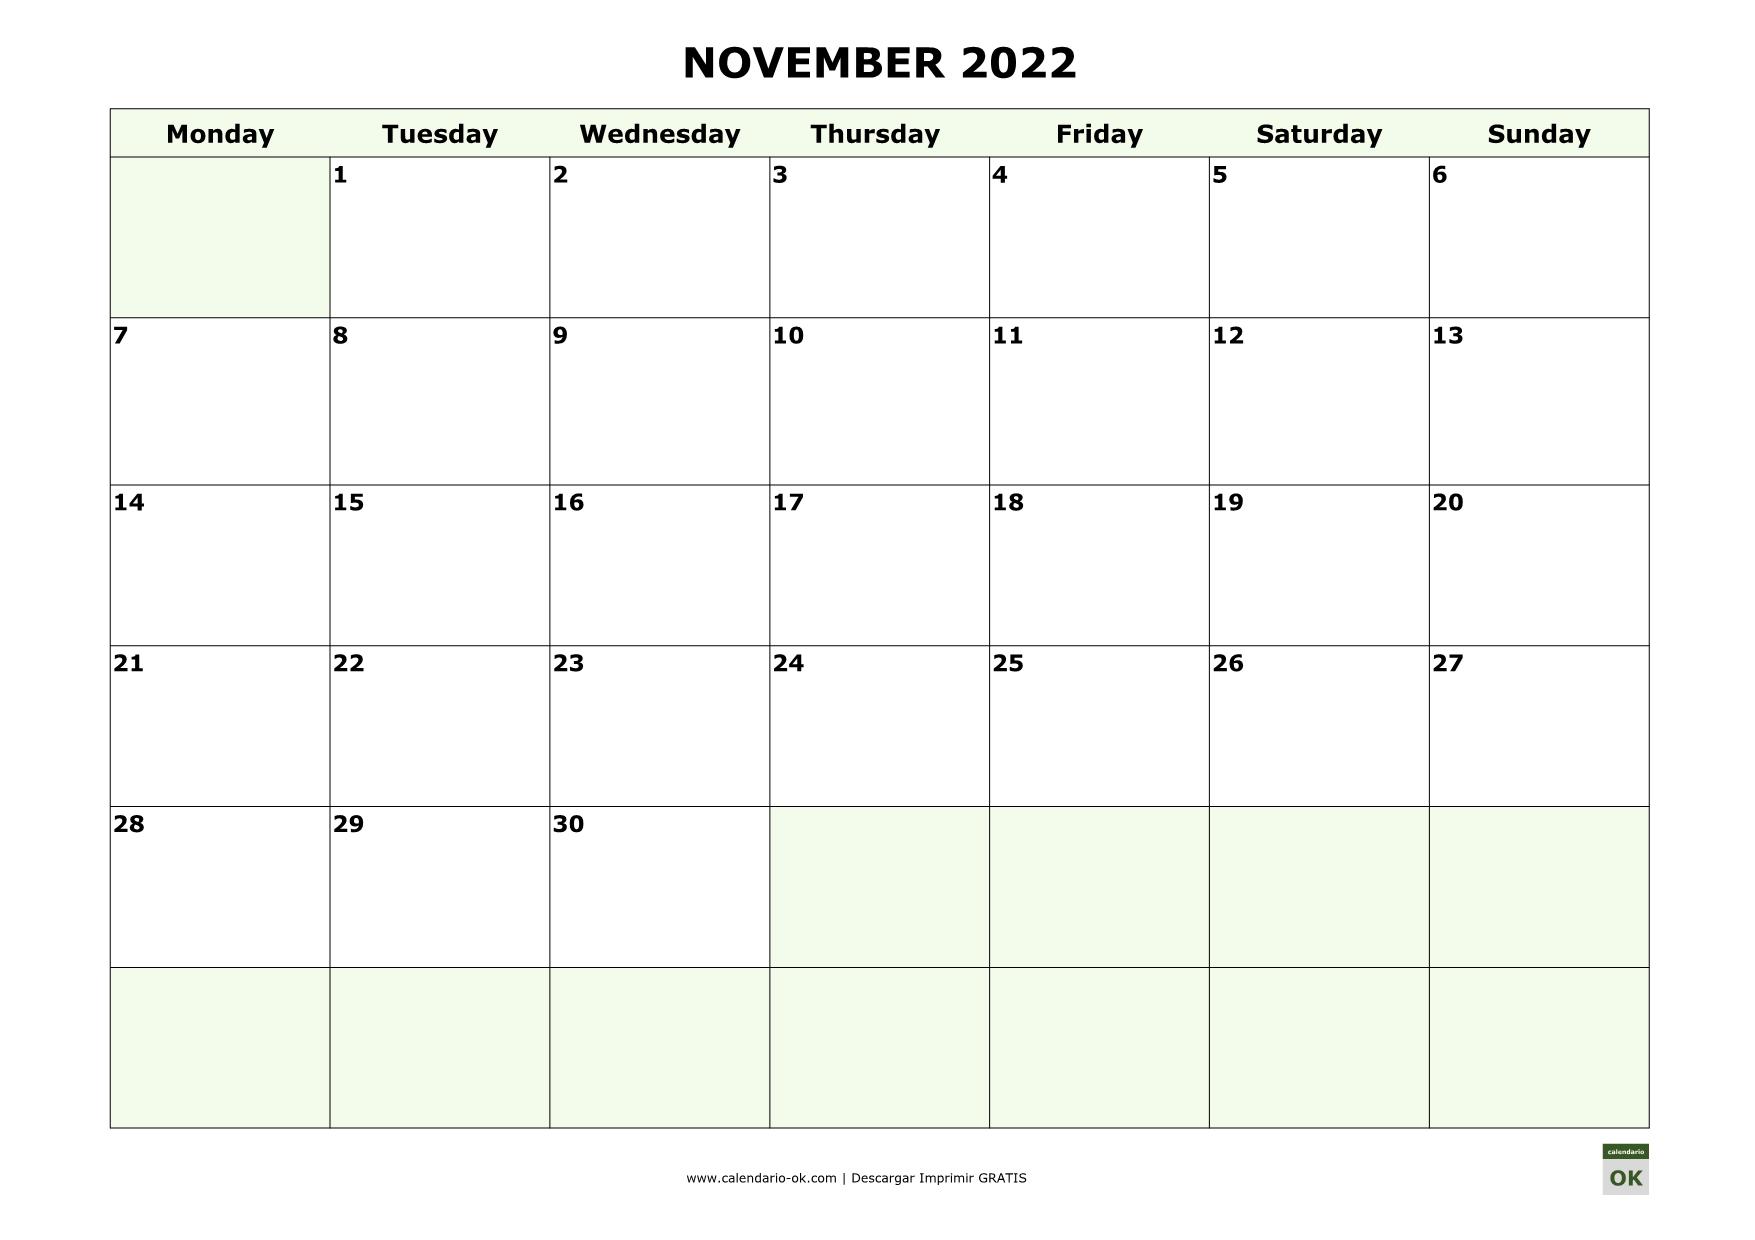 NOVIEMBRE 2022 calendario en INGLES